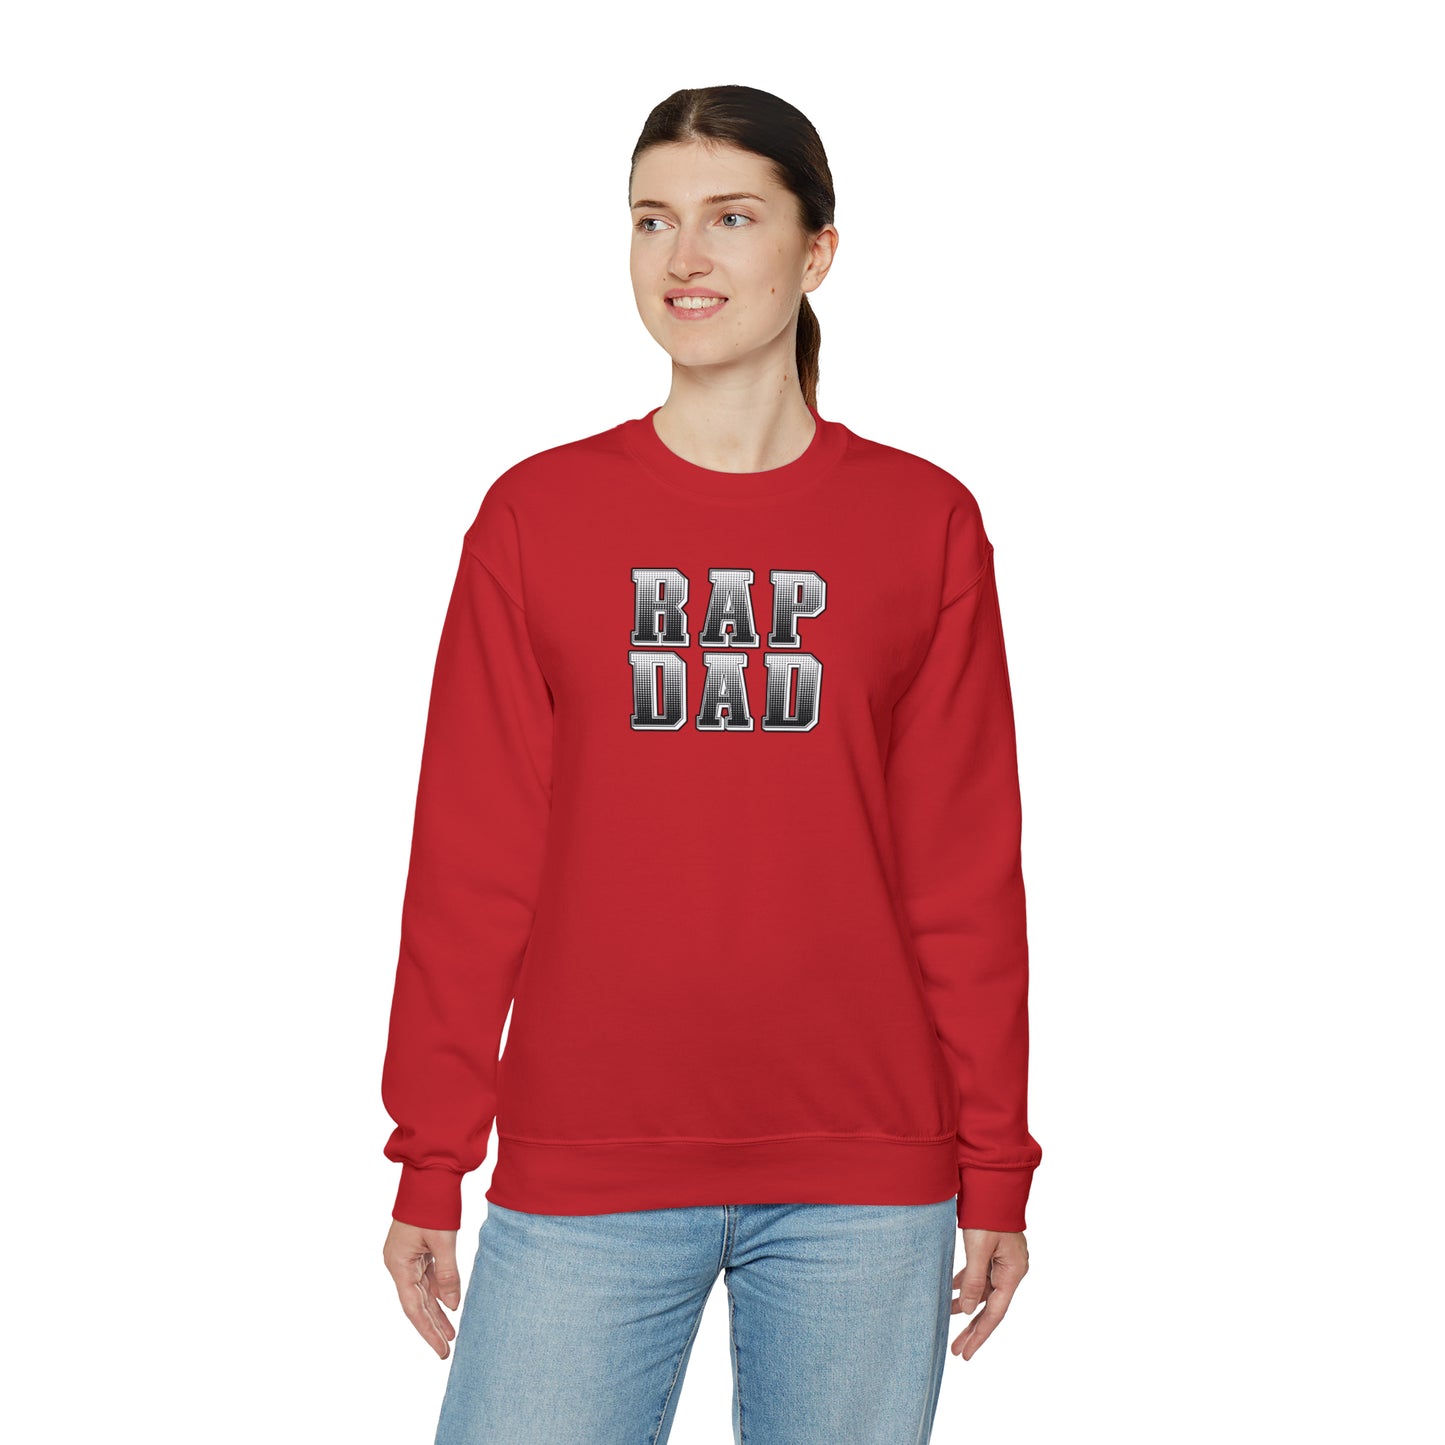 Rap Dad Crewneck Sweatshirt - Great gift for Dad